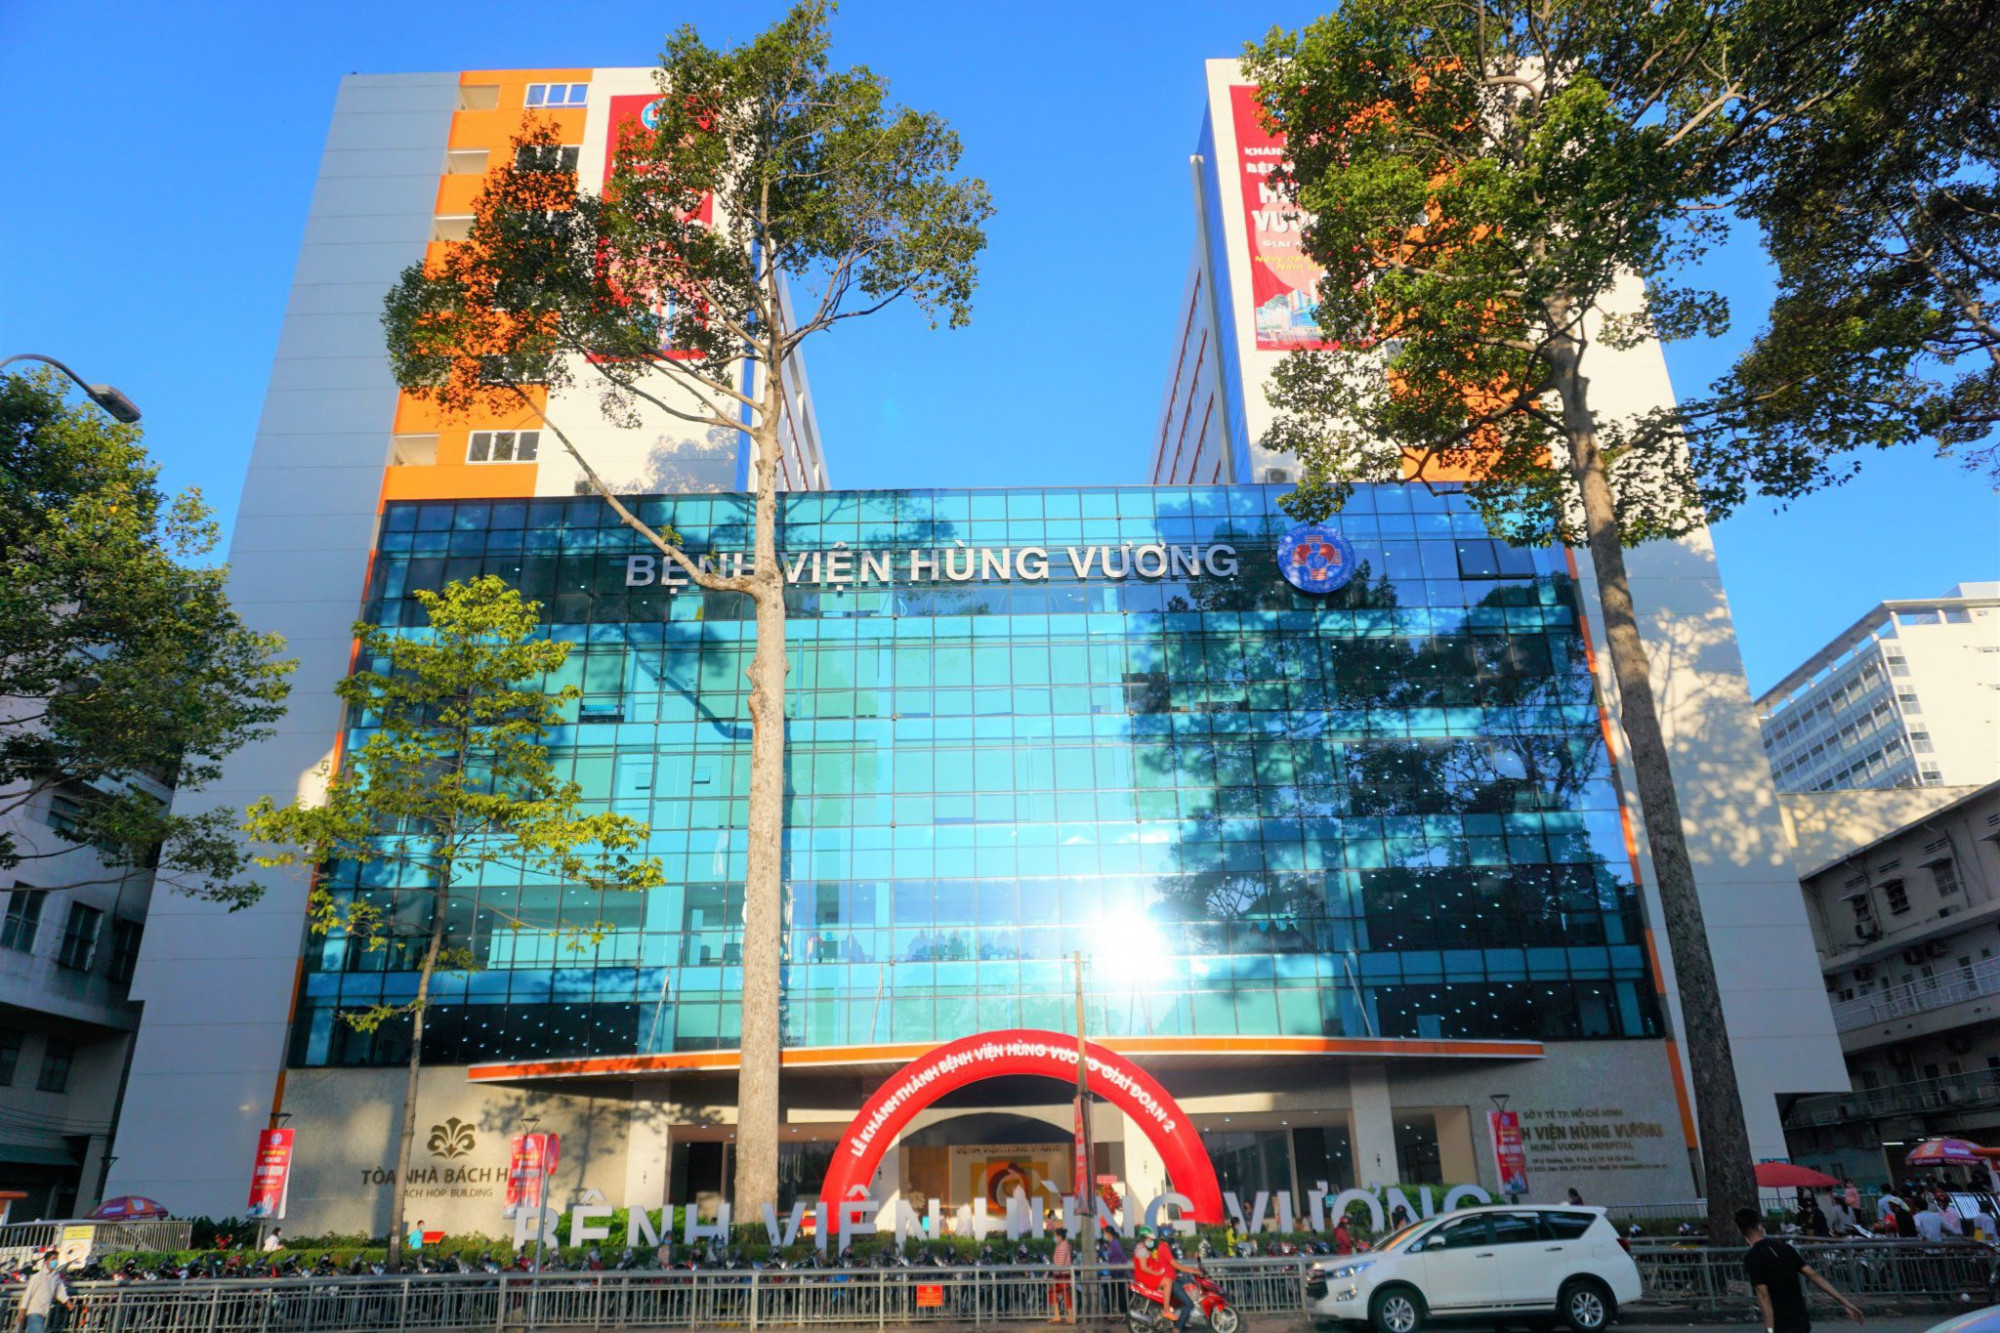 Đứng đầu trong 10 bệnh viện tốt nhất TPHCM là Bệnh viện Hùng Vương, đây là một trong những bệnh viện sản phụ khoa tuyến trung ương, hạng nhất hàng đầu tại khu vực phía Nam. Với quy mô 900 giường, mỗi năm chào đón khoảng 35.000 đến 40.000 đứa trẻ, trong đó có 20.000 đến 25.000 ca phẫu thuật.  Bệnh viện có hệ thống xét nghiệm tự động, phòng mổ đạt tiêu chuẩn chất lượng cao, thành lập khoa di truyền y học, khoa hiếm muộn với cơ sở vật chất hiện đại và đầy đủ trang thiết bị đạt tiêu chuẩn RTAC (tiêu chuẩn quốc tế về chất lượng kỹ thuật thụ tinh trong ống nghiệm – TTTON) góp phần nâng cao tỉ lệ thành công trong TTTON